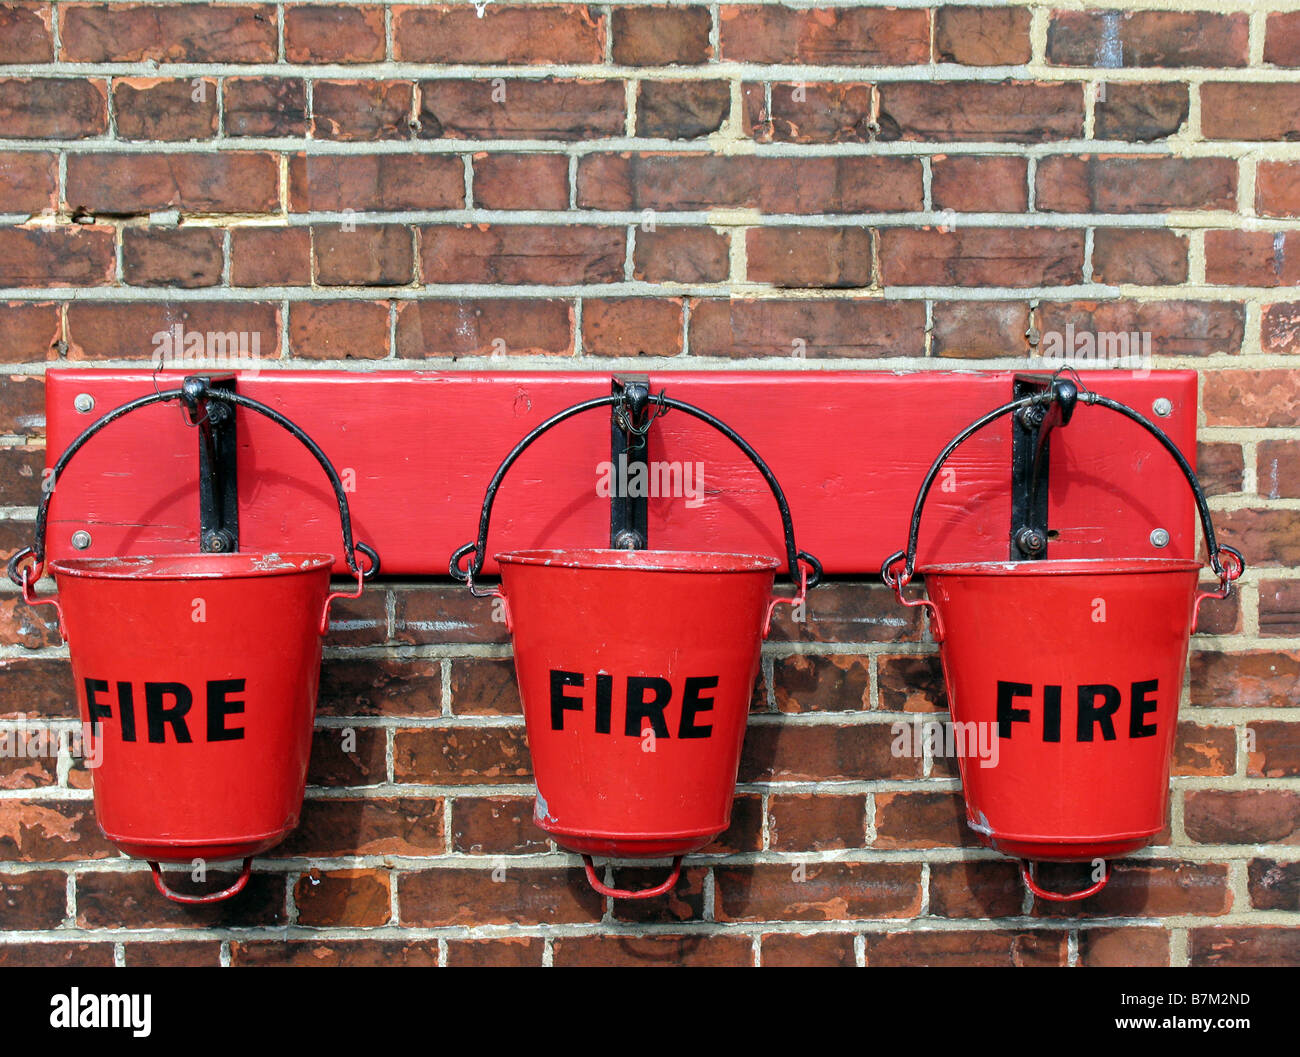 Meubles anciens seaux d'incendie dans une gare, fixés au mur Banque D'Images